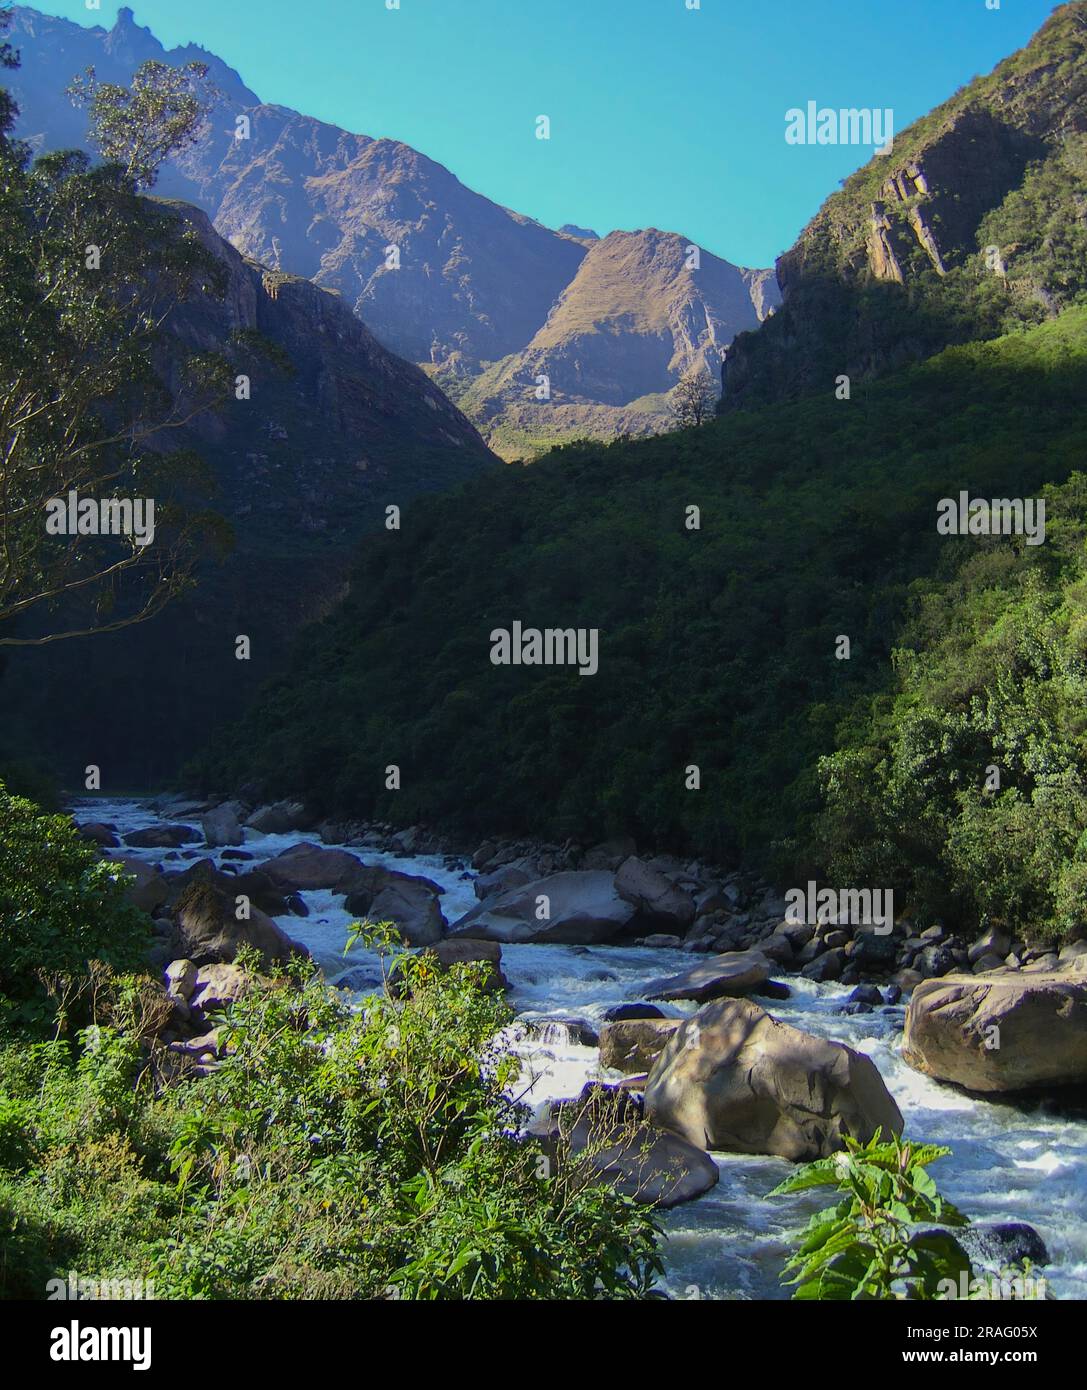 Urubamba River as seen from the Train going towards Machu Picchu in Peru. Stock Photo